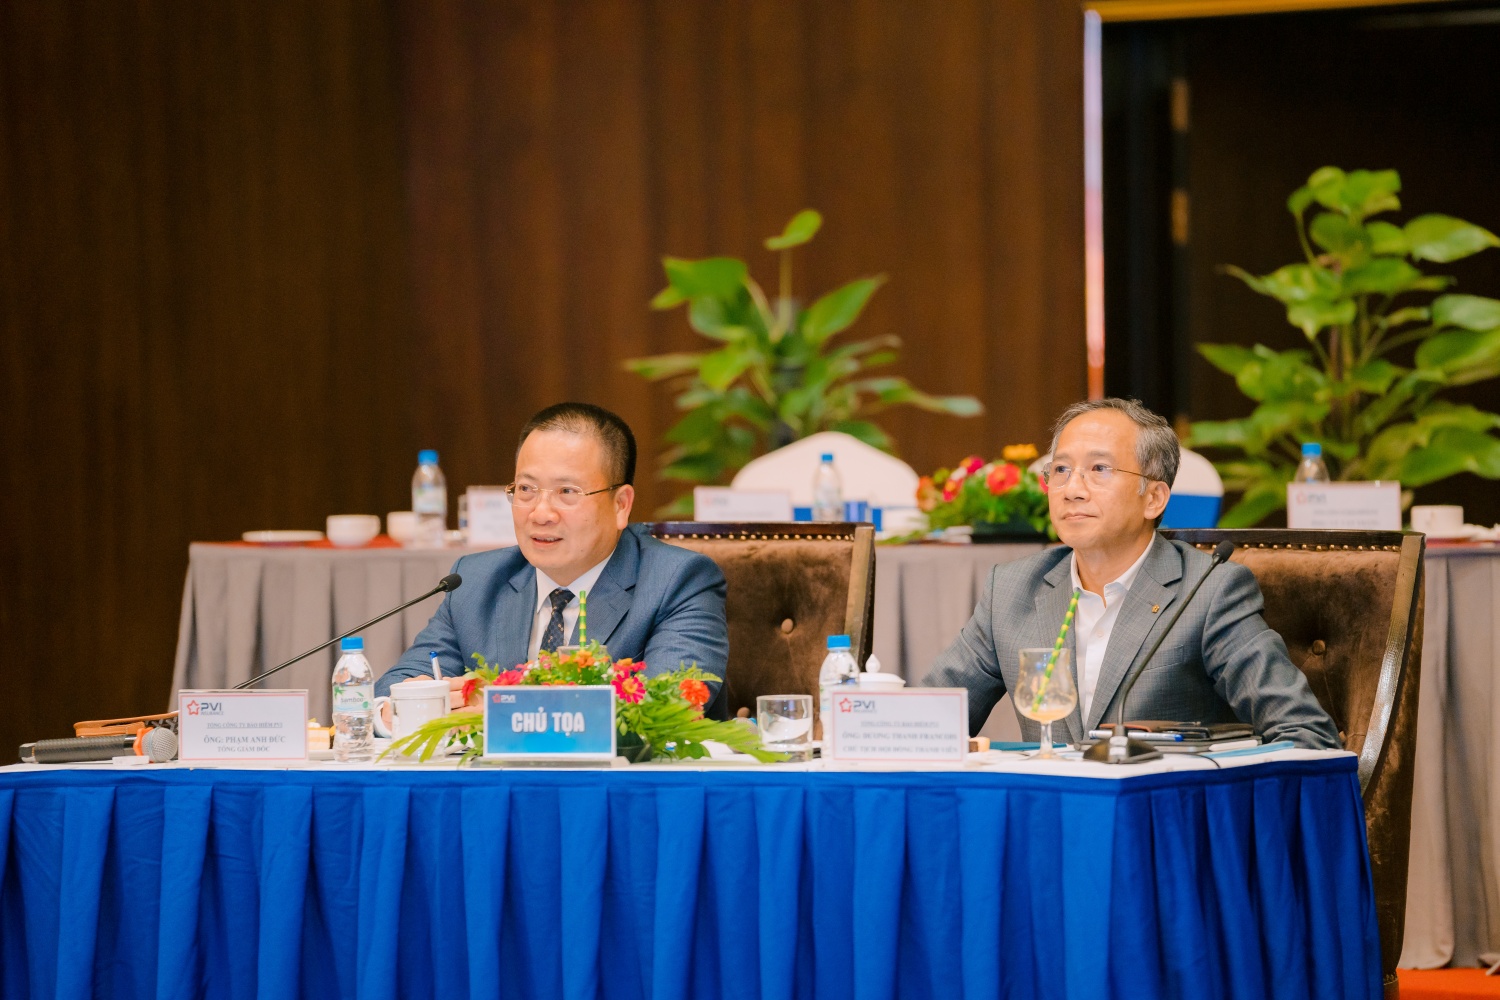  Ông Dương Thanh Francois, Chủ tịch HĐTV (bìa phải) và ông Phạm Anh Đức, Tổng giám đốc Bảo hiểm PVI (bìa trái) chủ trì Hội nghị